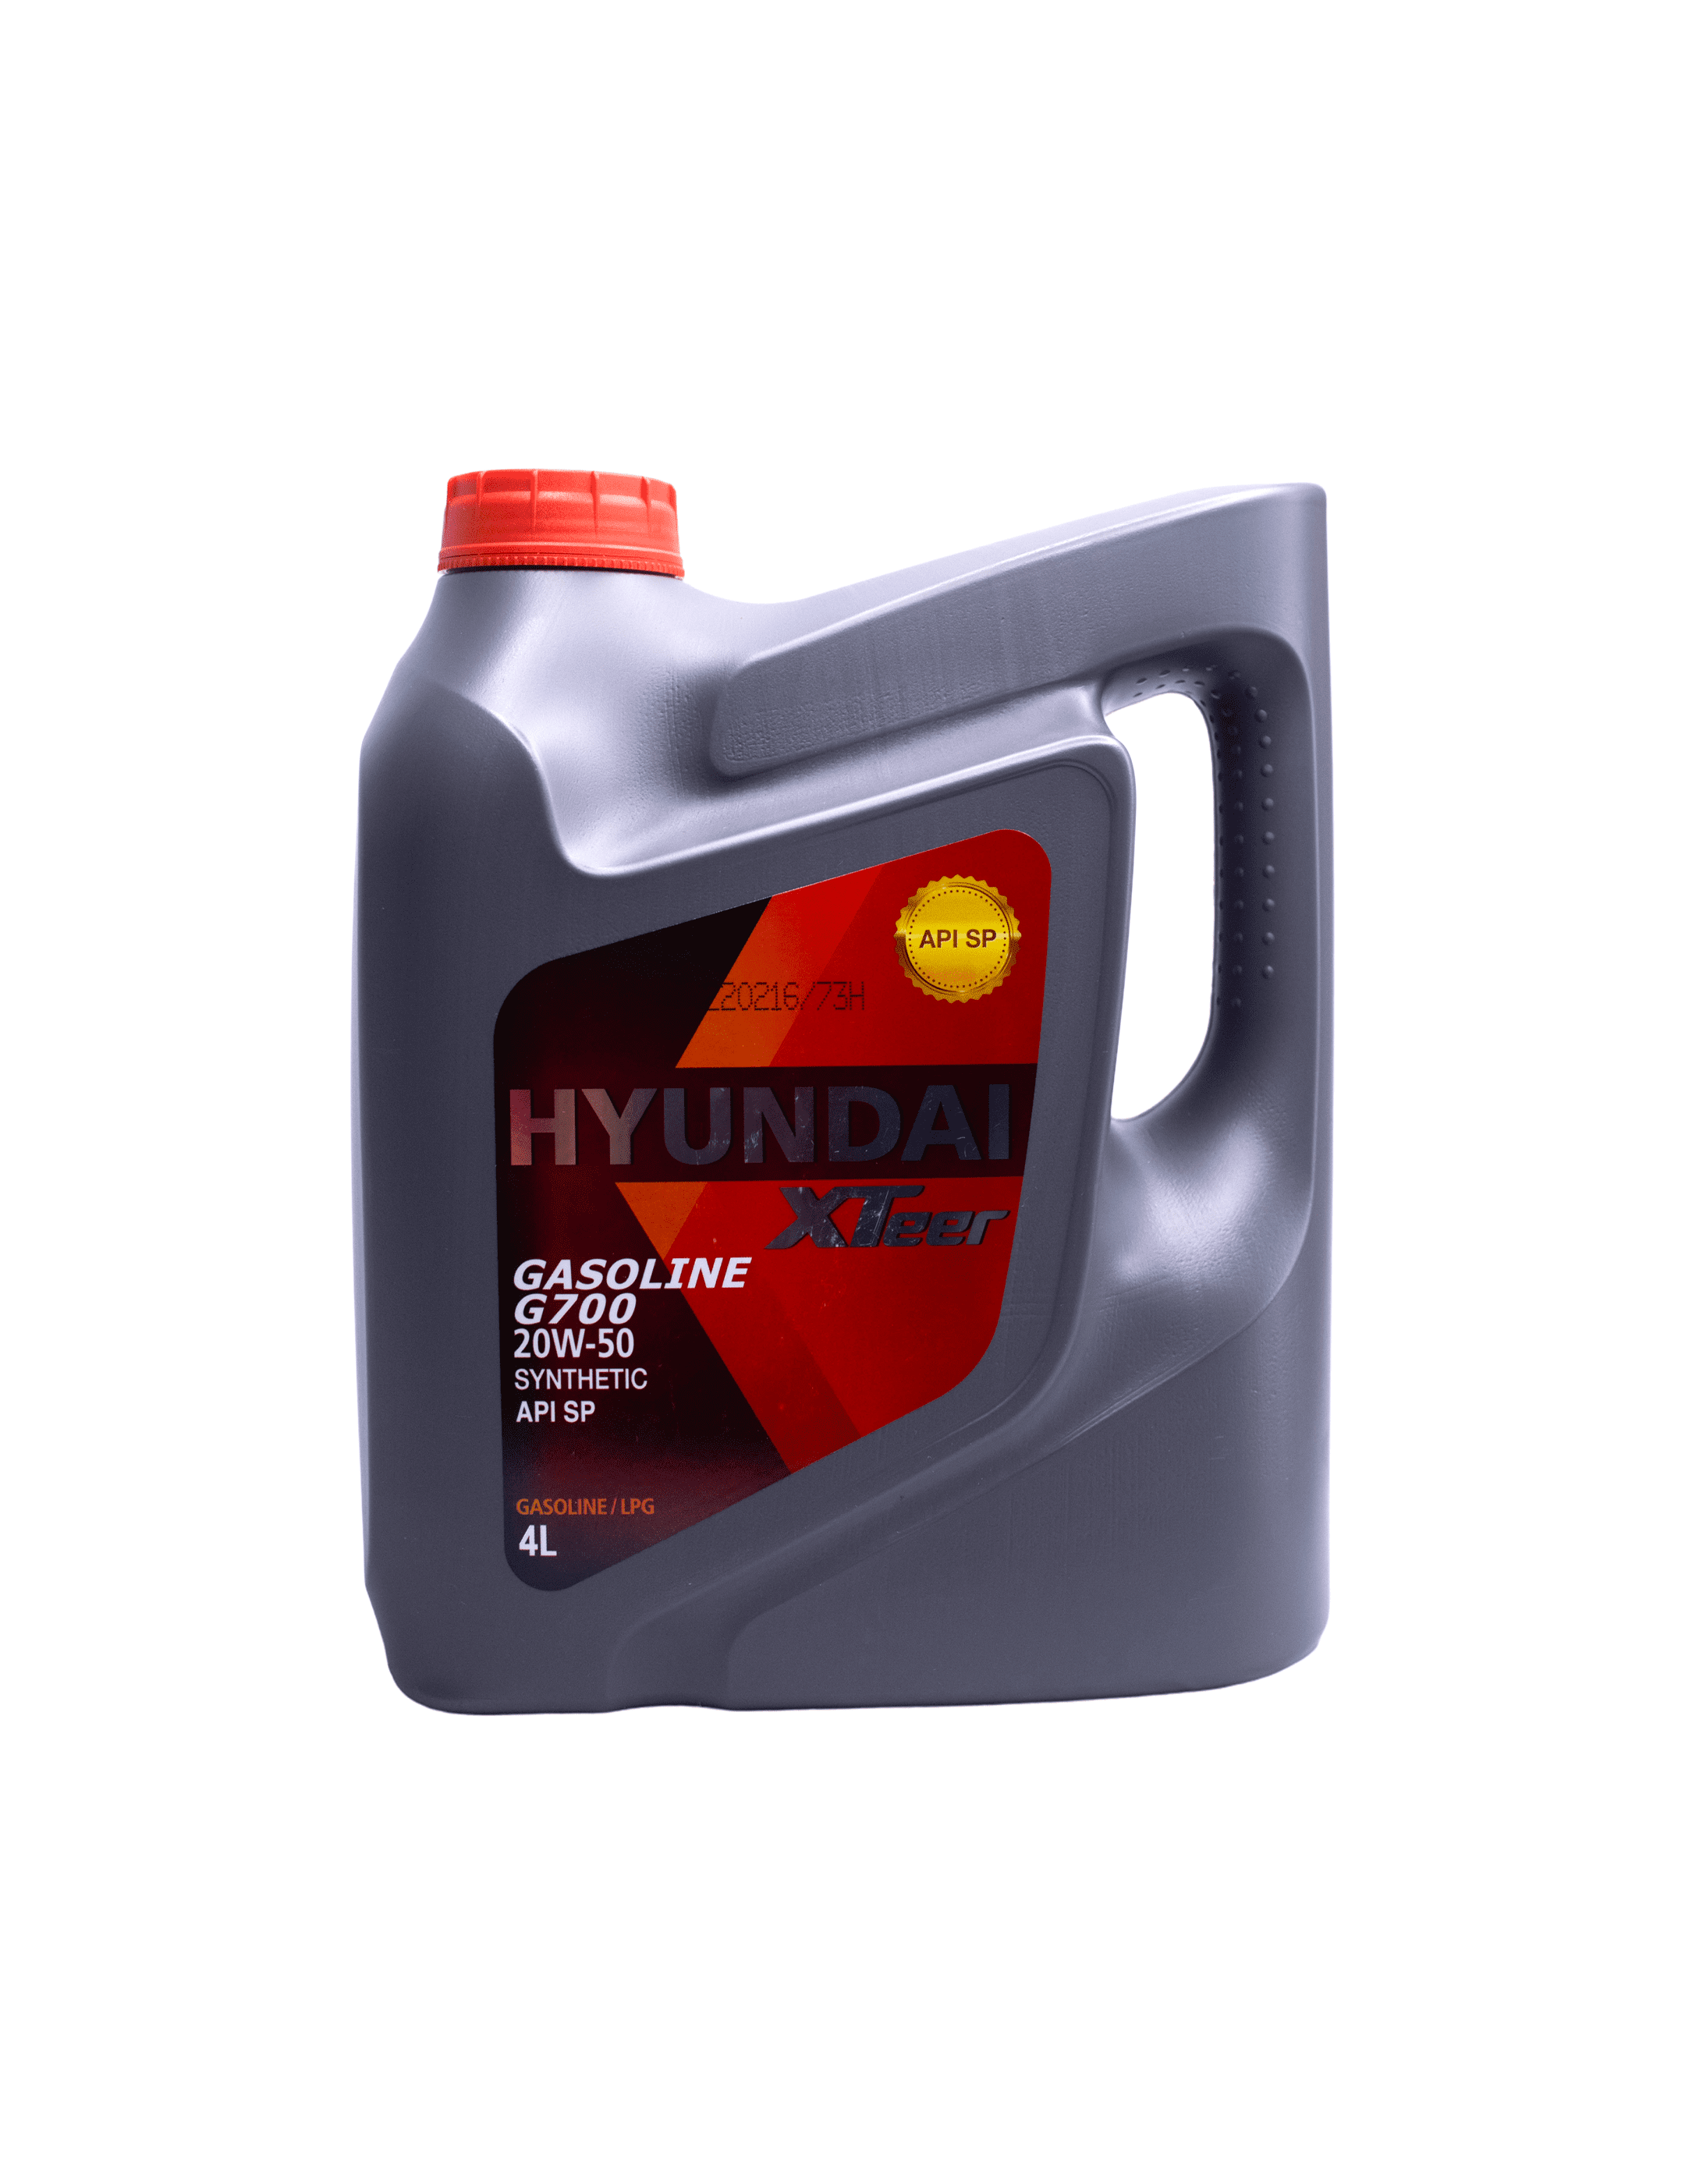 HYUNDAI XTEER GASOLINE G500 20W-50 SL 4LT